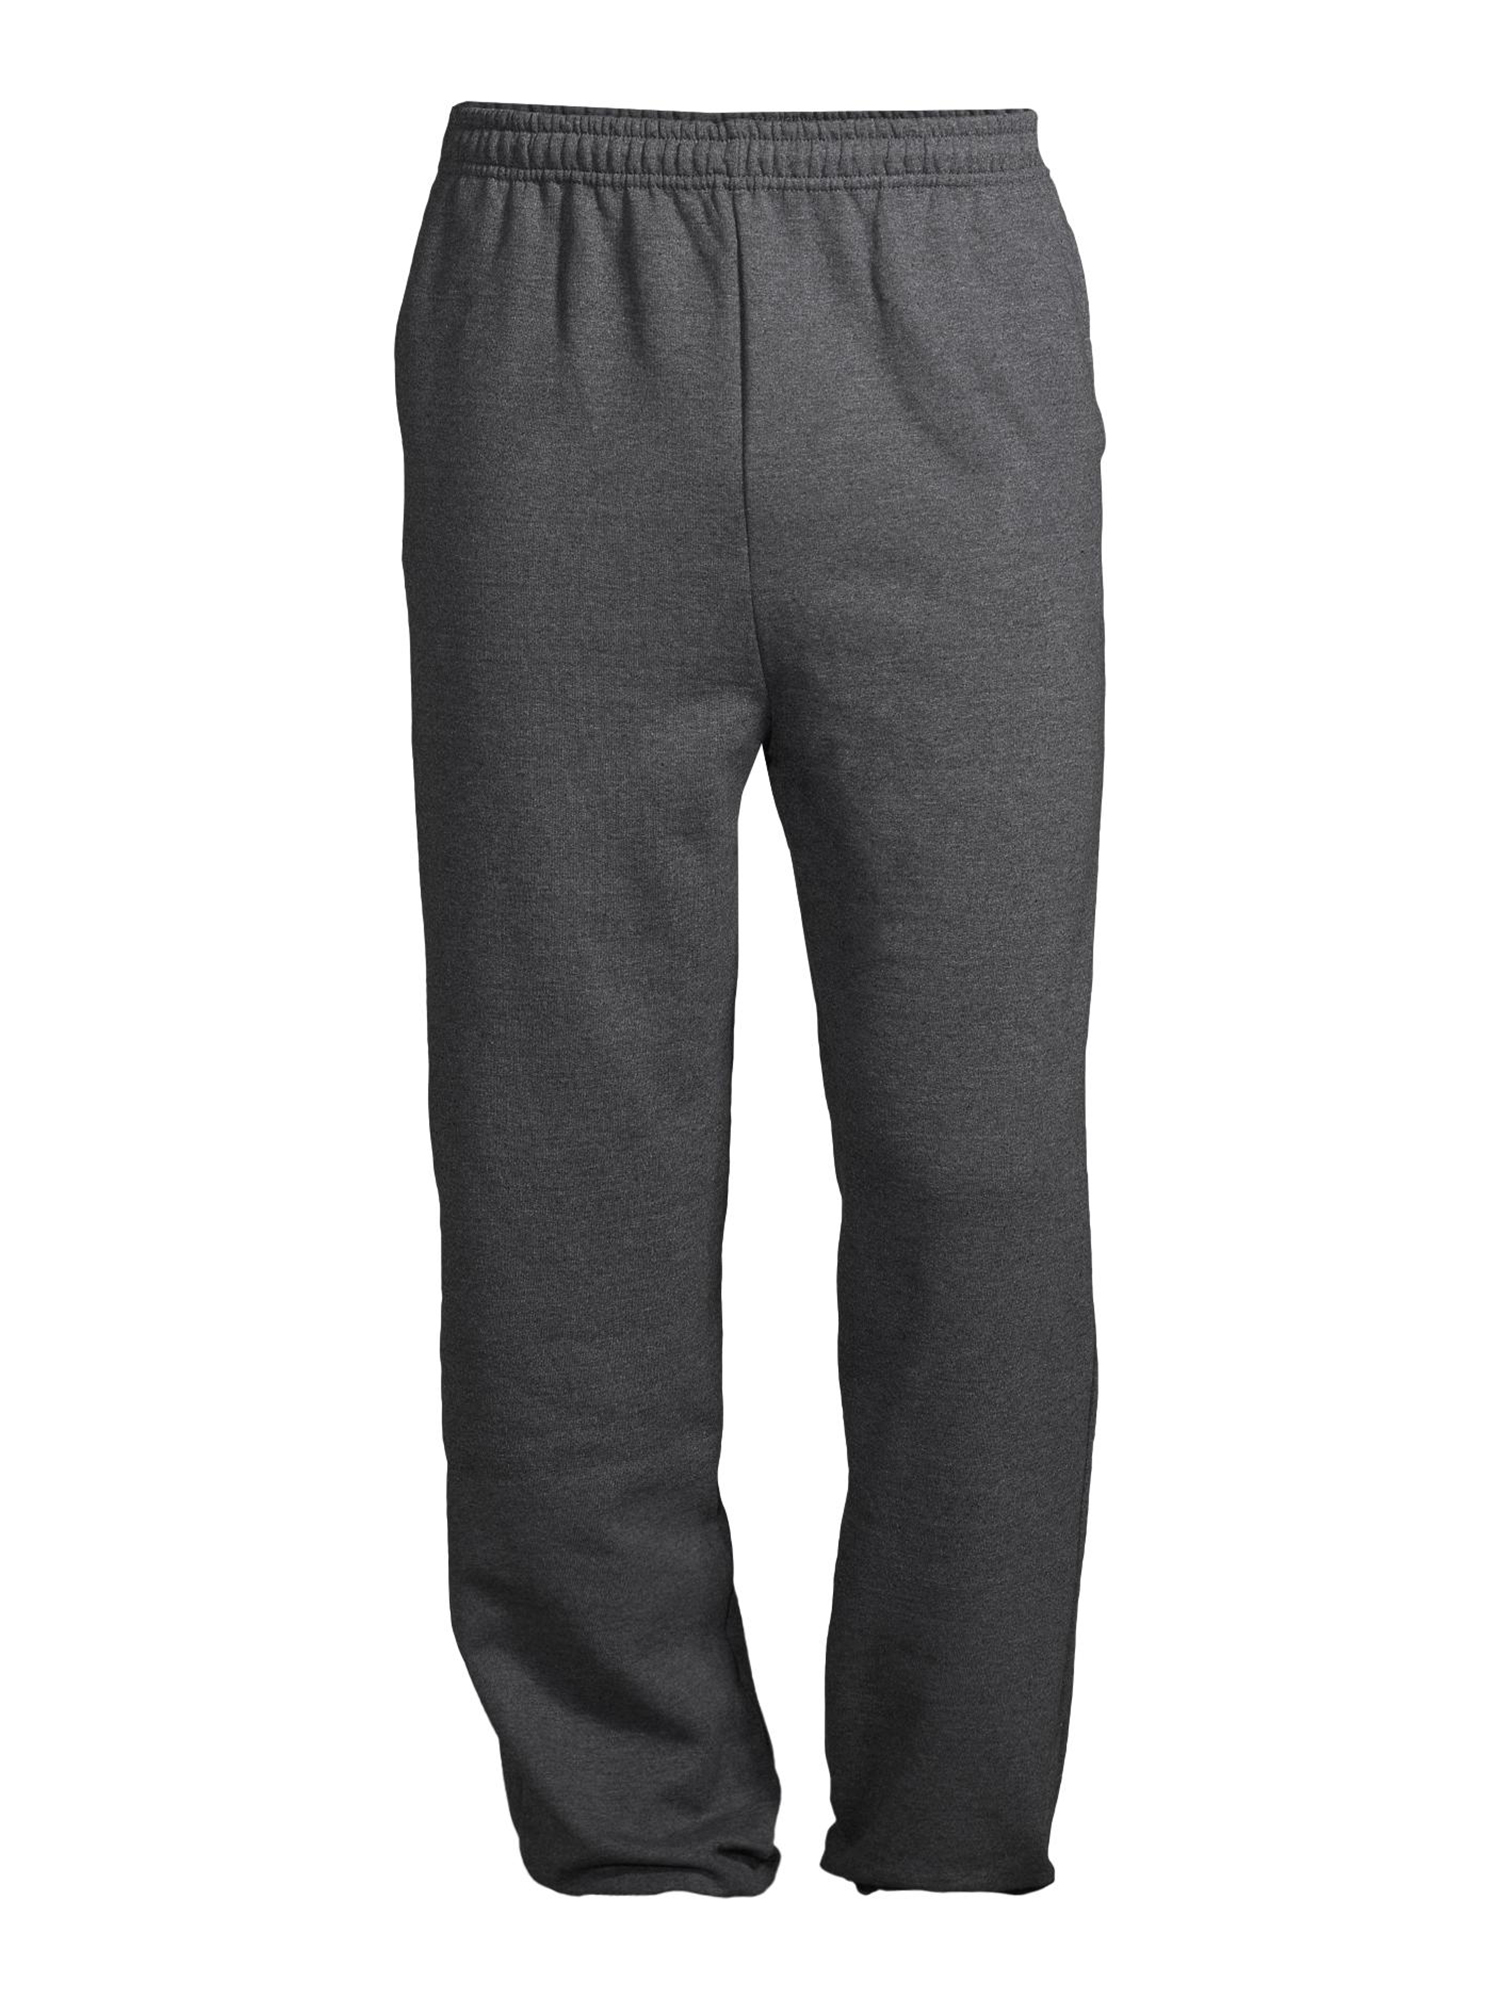 Gildan Men's Fleece Elastic Bottom Pocketed Sweatpants, up to Size 2XL - image 1 of 6